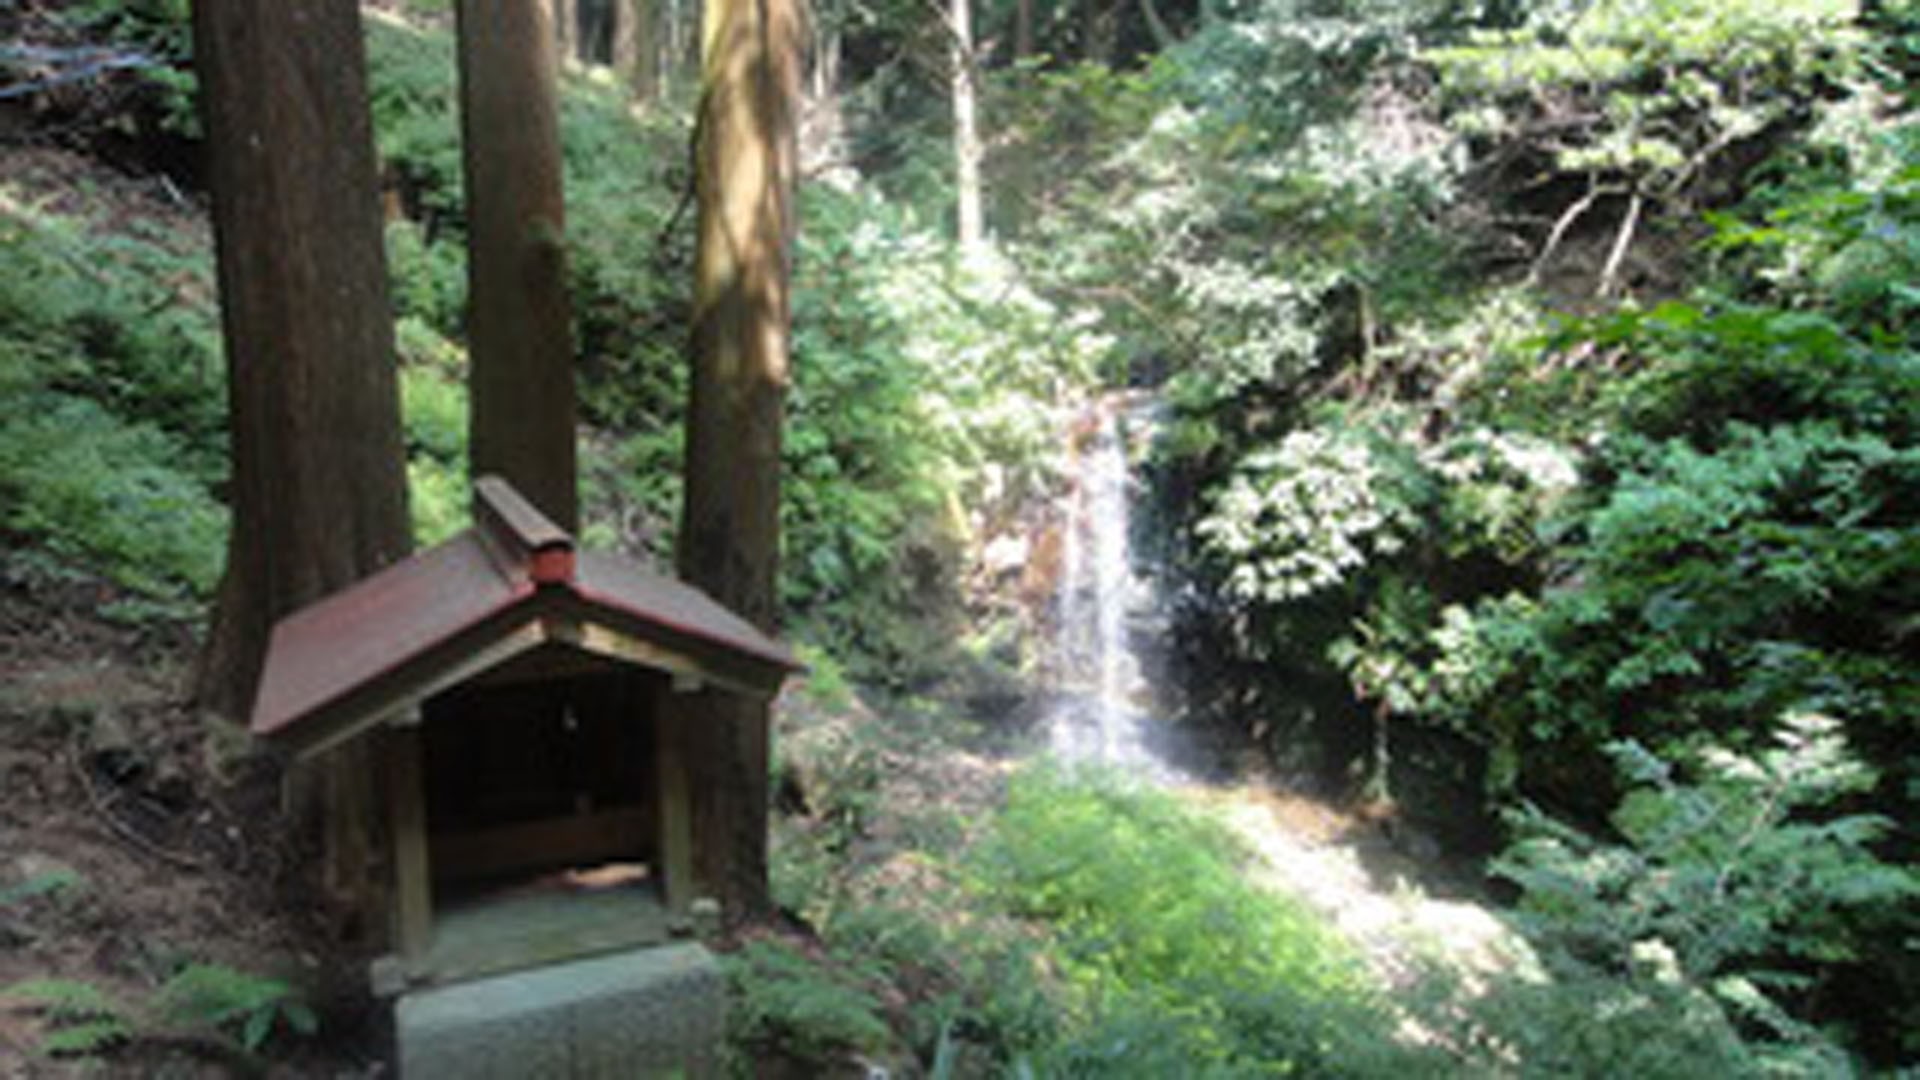 Chigiri no rokutaki (waterfalls of promise)